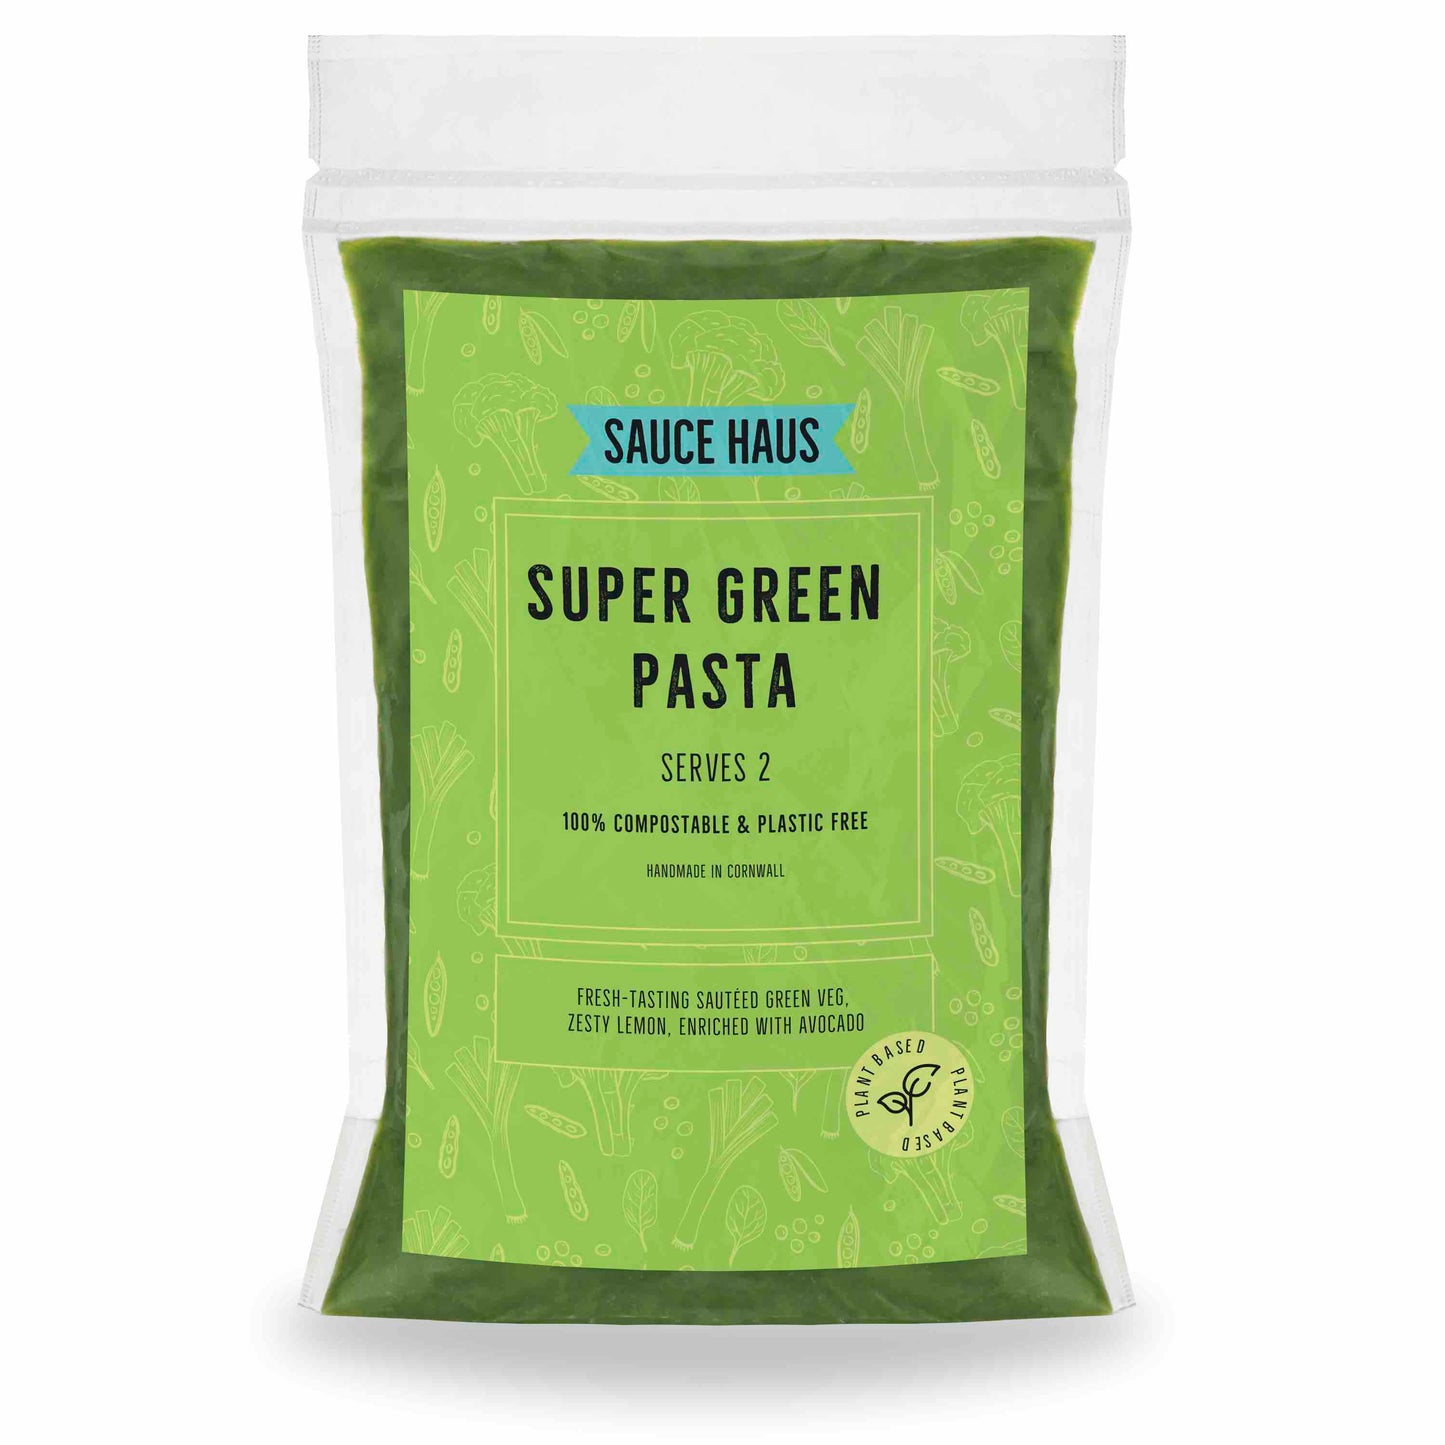 Super Green Pasta